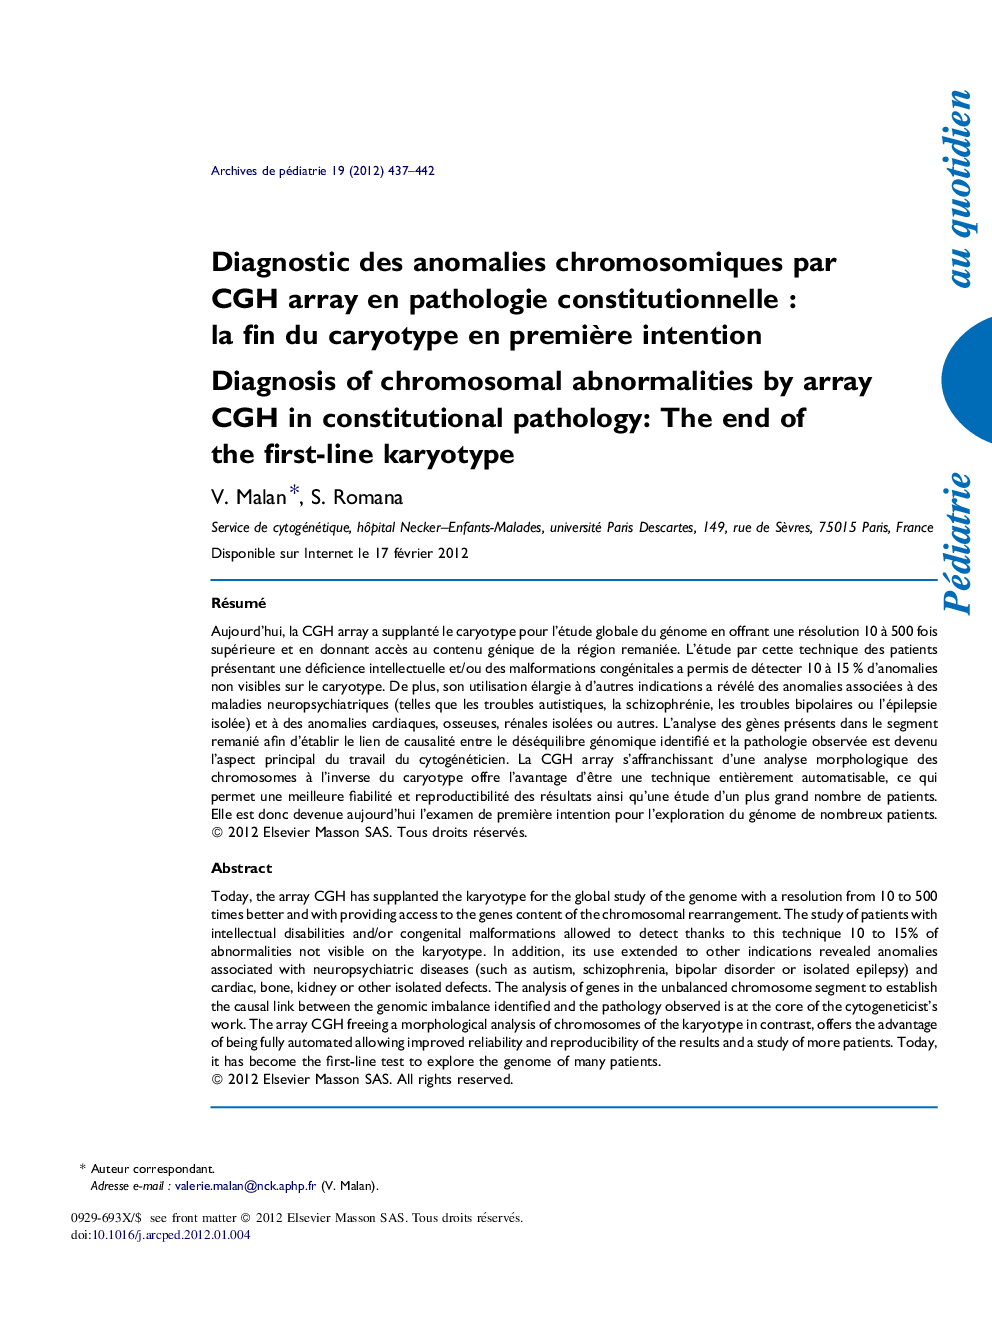 Diagnostic des anomalies chromosomiques par CGH array en pathologie constitutionnelle : la fin du caryotype en première intention